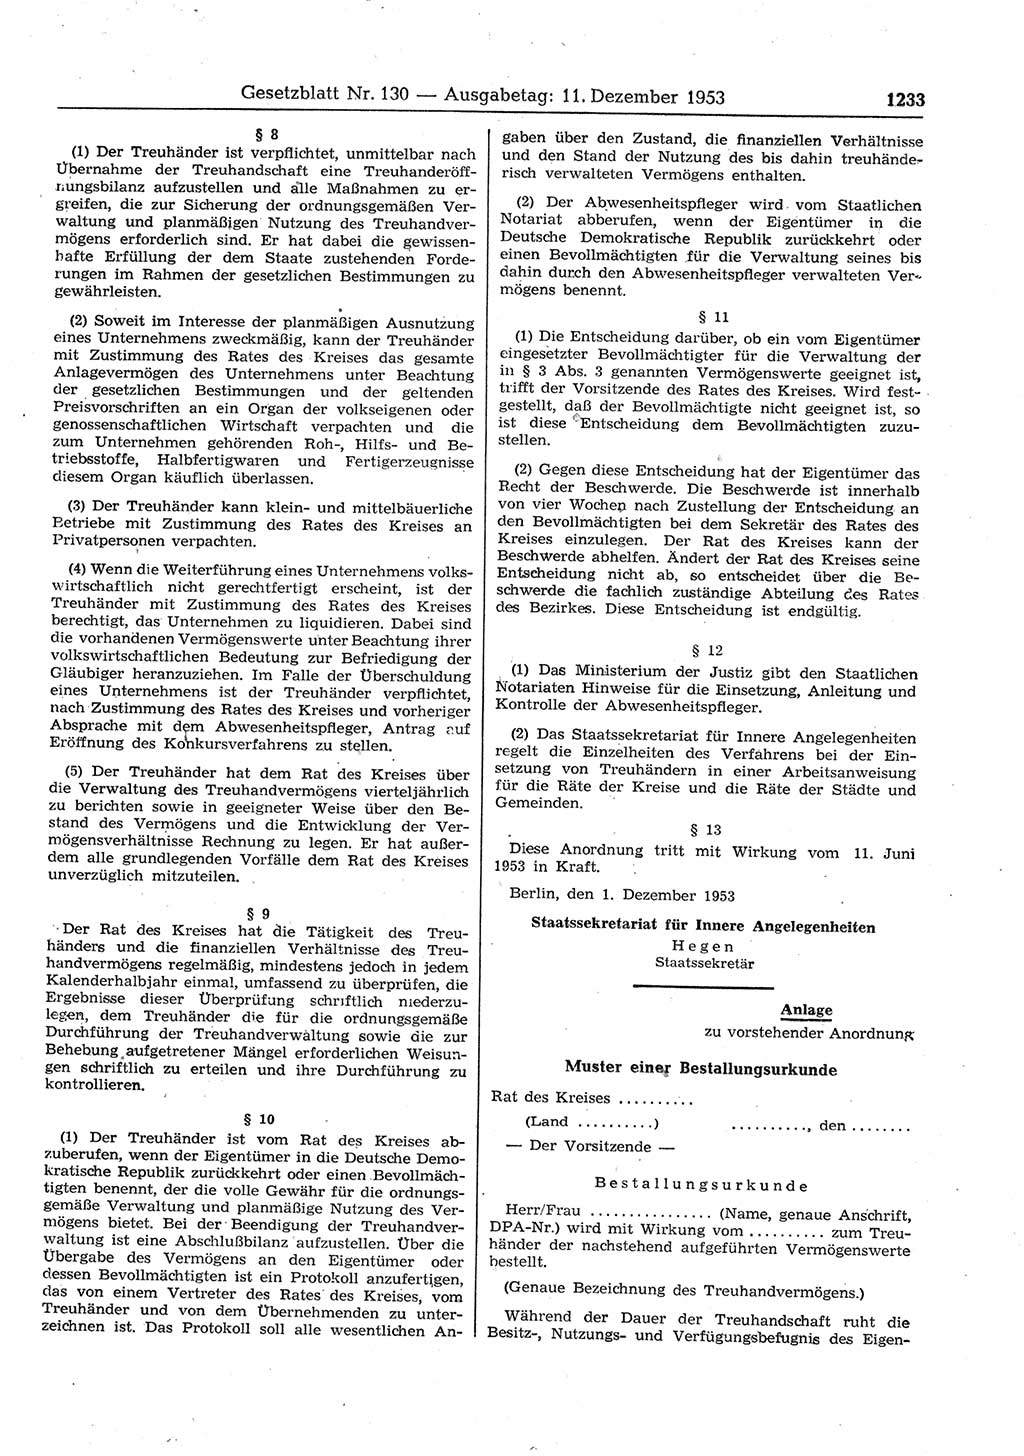 Gesetzblatt (GBl.) der Deutschen Demokratischen Republik (DDR) 1953, Seite 1233 (GBl. DDR 1953, S. 1233)